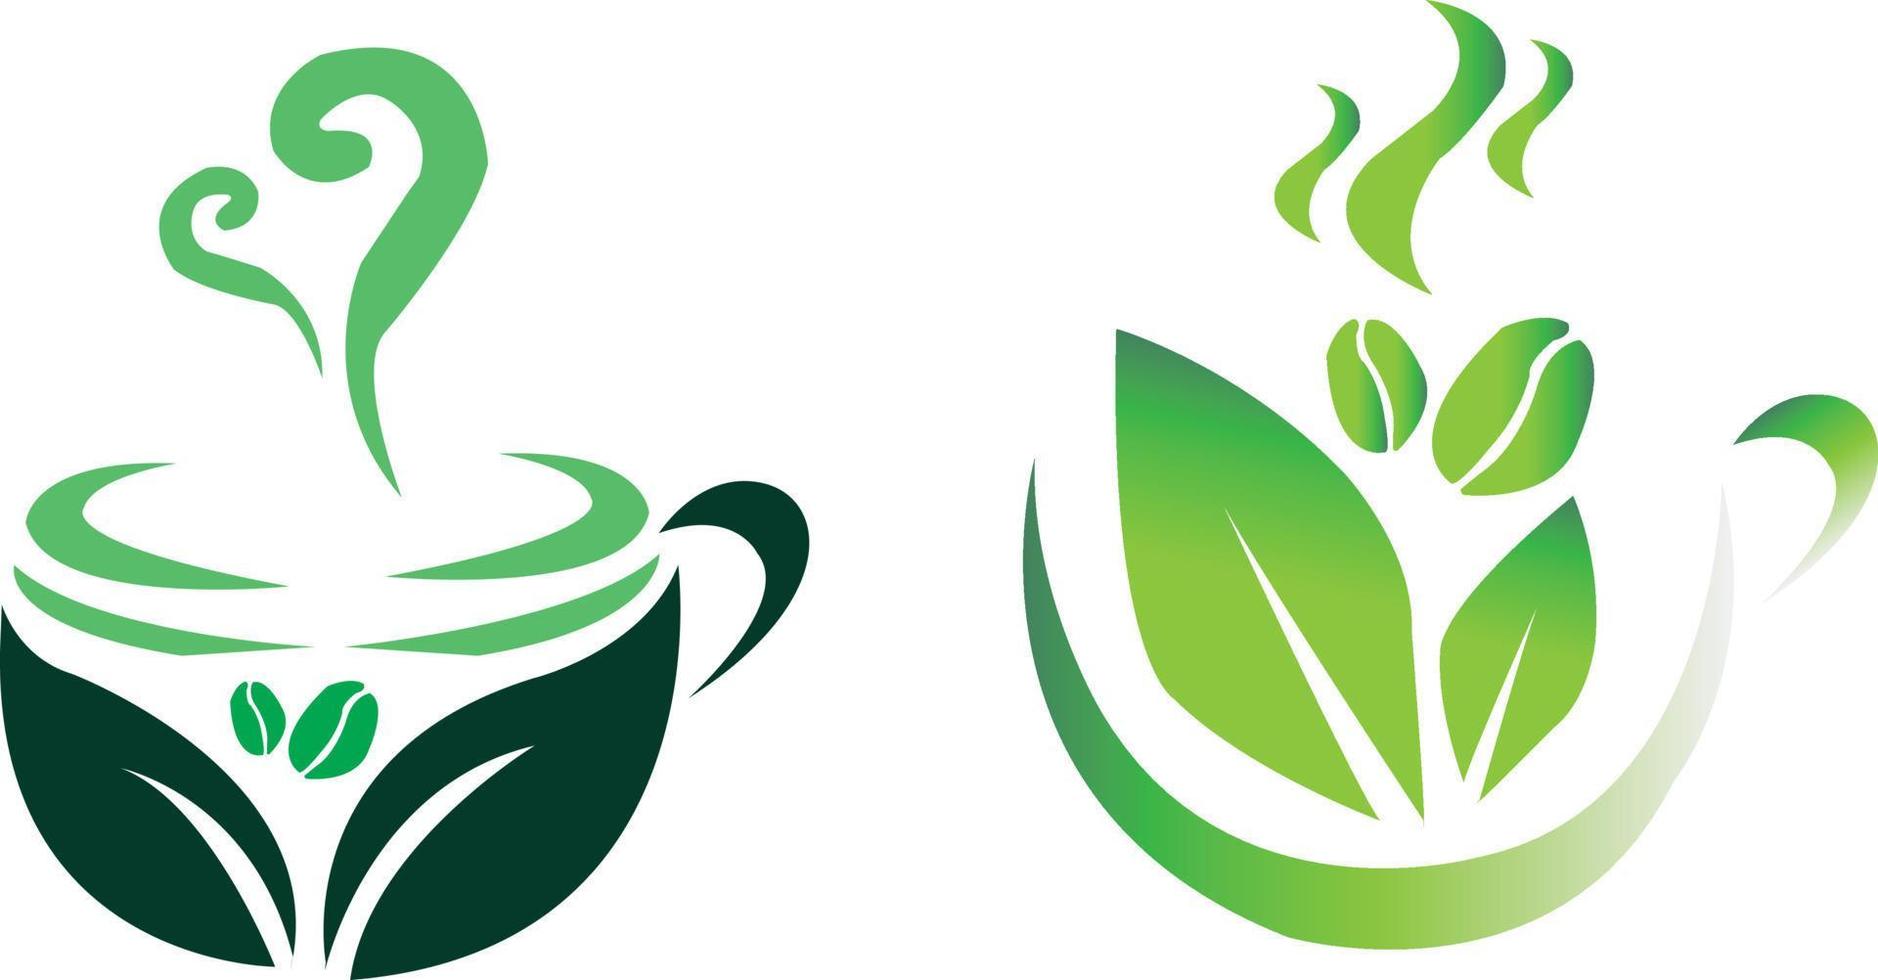 logo koffiecafé voor uw bedrijf, groene koffie logo vector